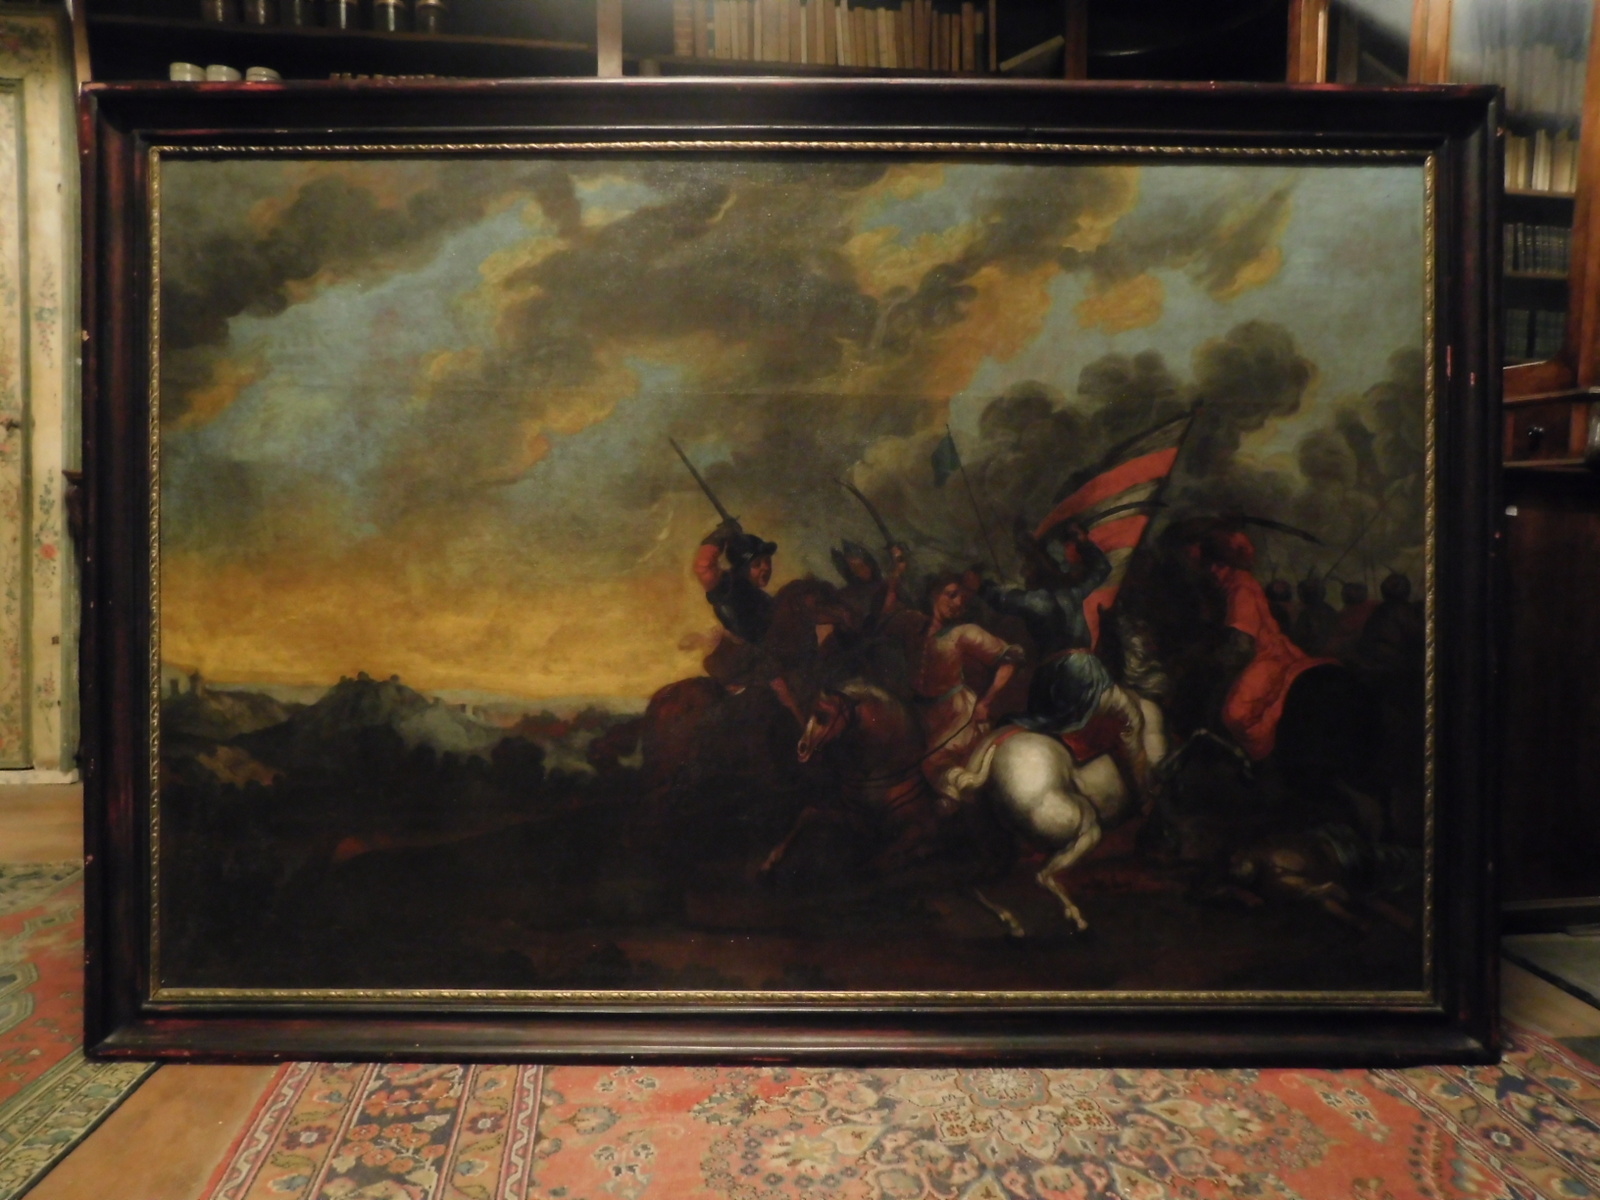 A pan291 - peinture à l'huile sur toile, période '600 /' 700, cm l 218 x h 151